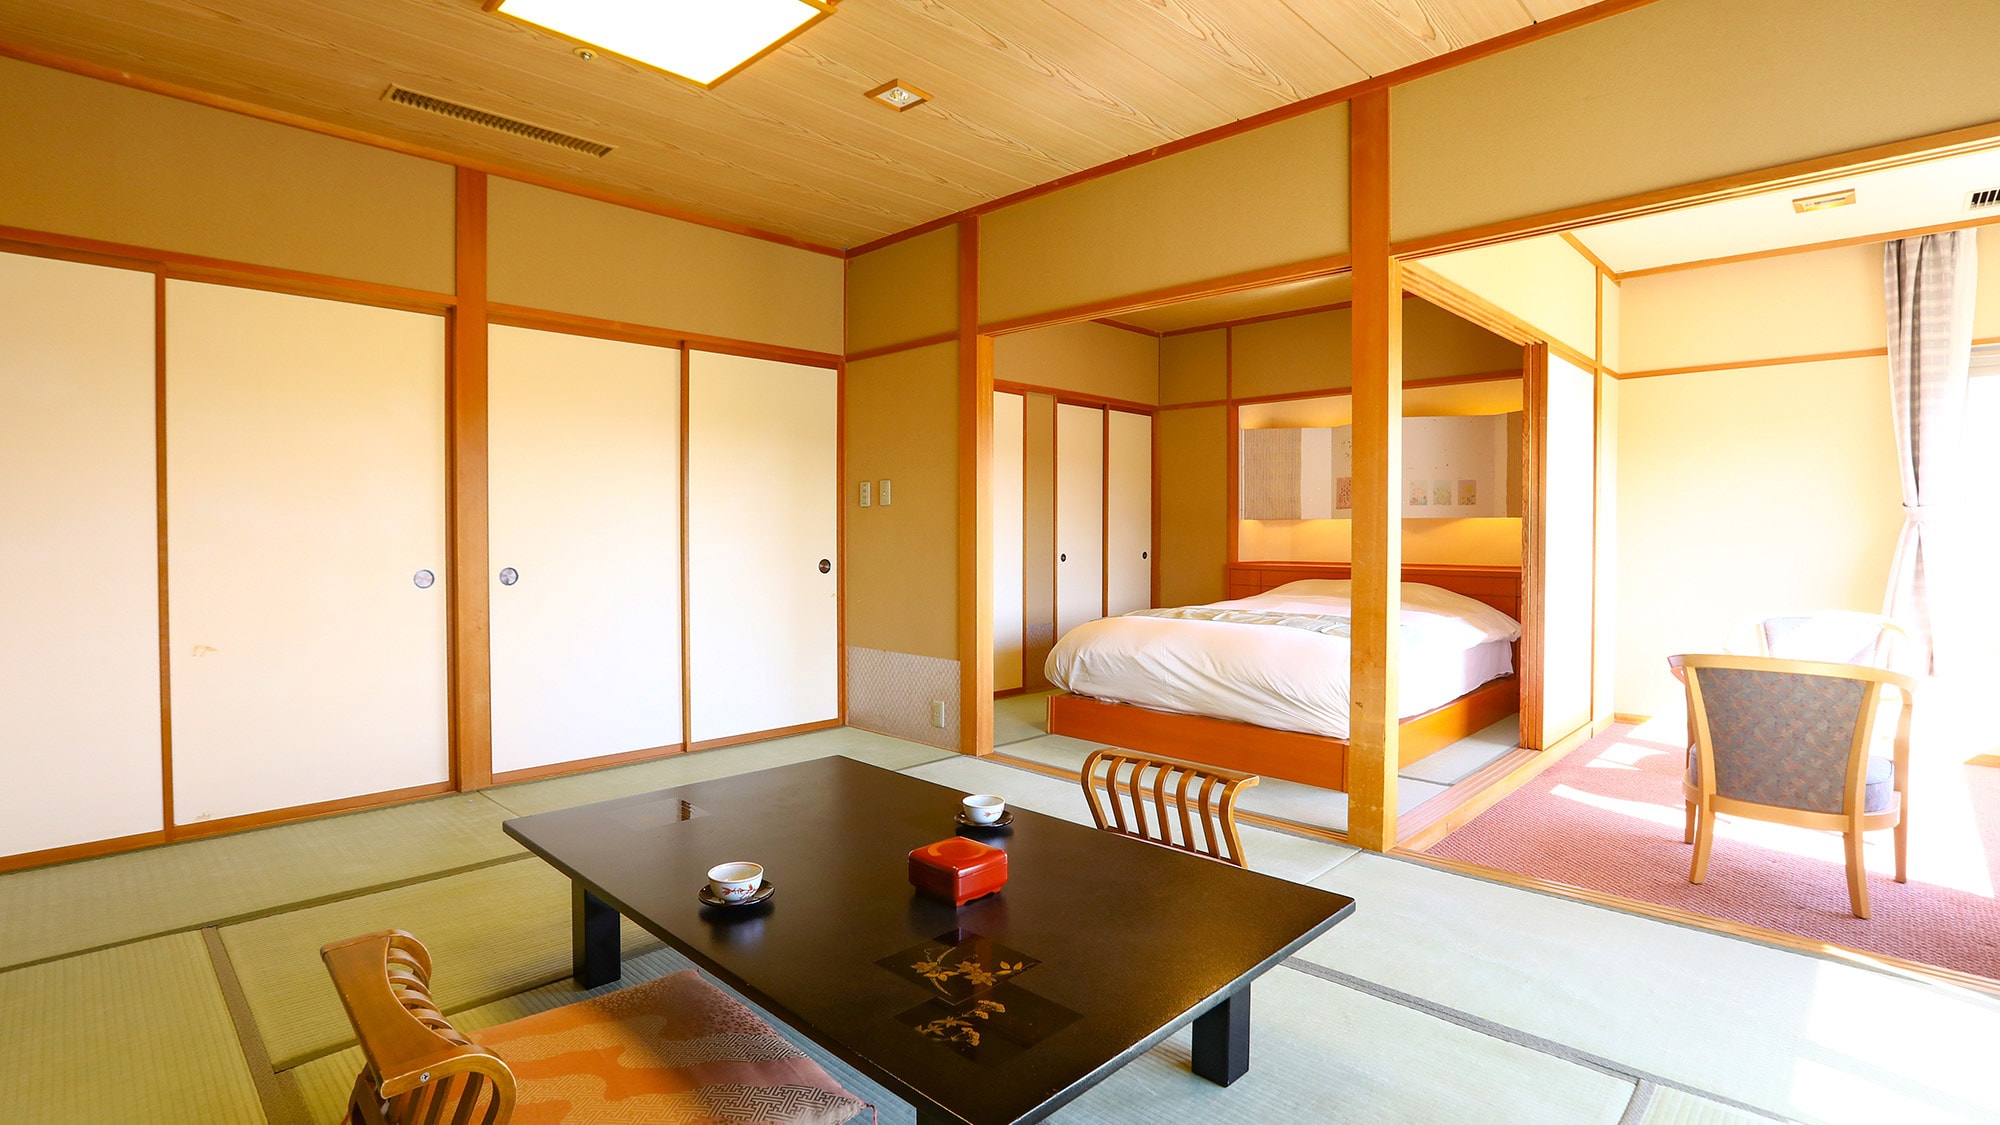 [ปลอดบุหรี่] ห้องสไตล์ญี่ปุ่น 10 เสื่อทาทามิ + 4.5 เสื่อทาทามิ + 1 เตียงเซมิดับเบิล (ตัวอย่าง) & hellip; Simmons semi-double bed รวมอยู่ด้วย